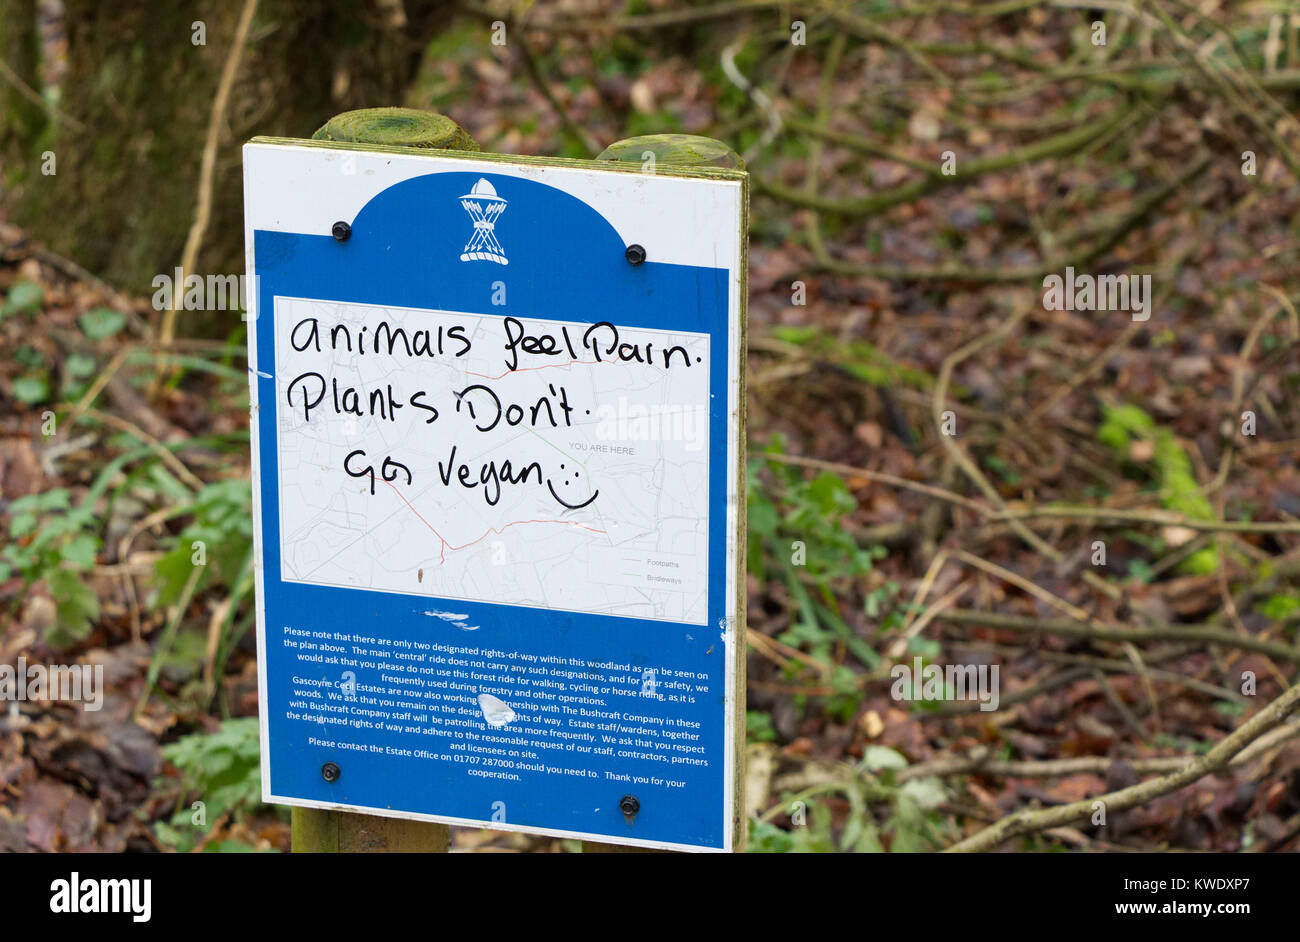 Signe la campagne de propagande vegan vandalisé avec graffiti, Broxbourne Woods, hiver, UK Banque D'Images